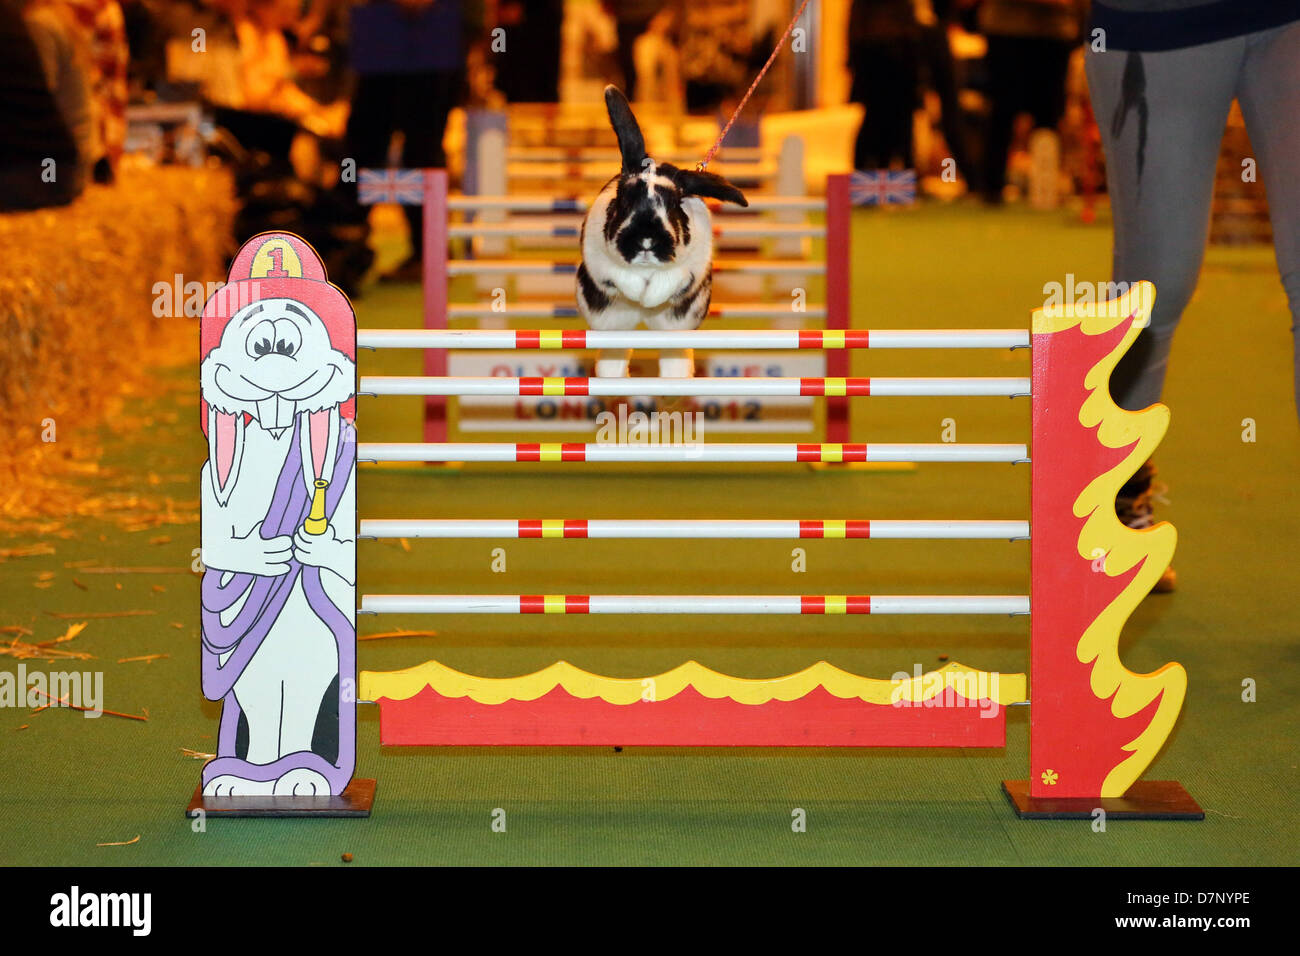 Londres, Royaume-Uni. 11 mai 2013. Lapin de saut de la Suède à la London Pet Show 2013, Earls Court, London, England. Crédit : Paul Brown/Alamy Live News Banque D'Images